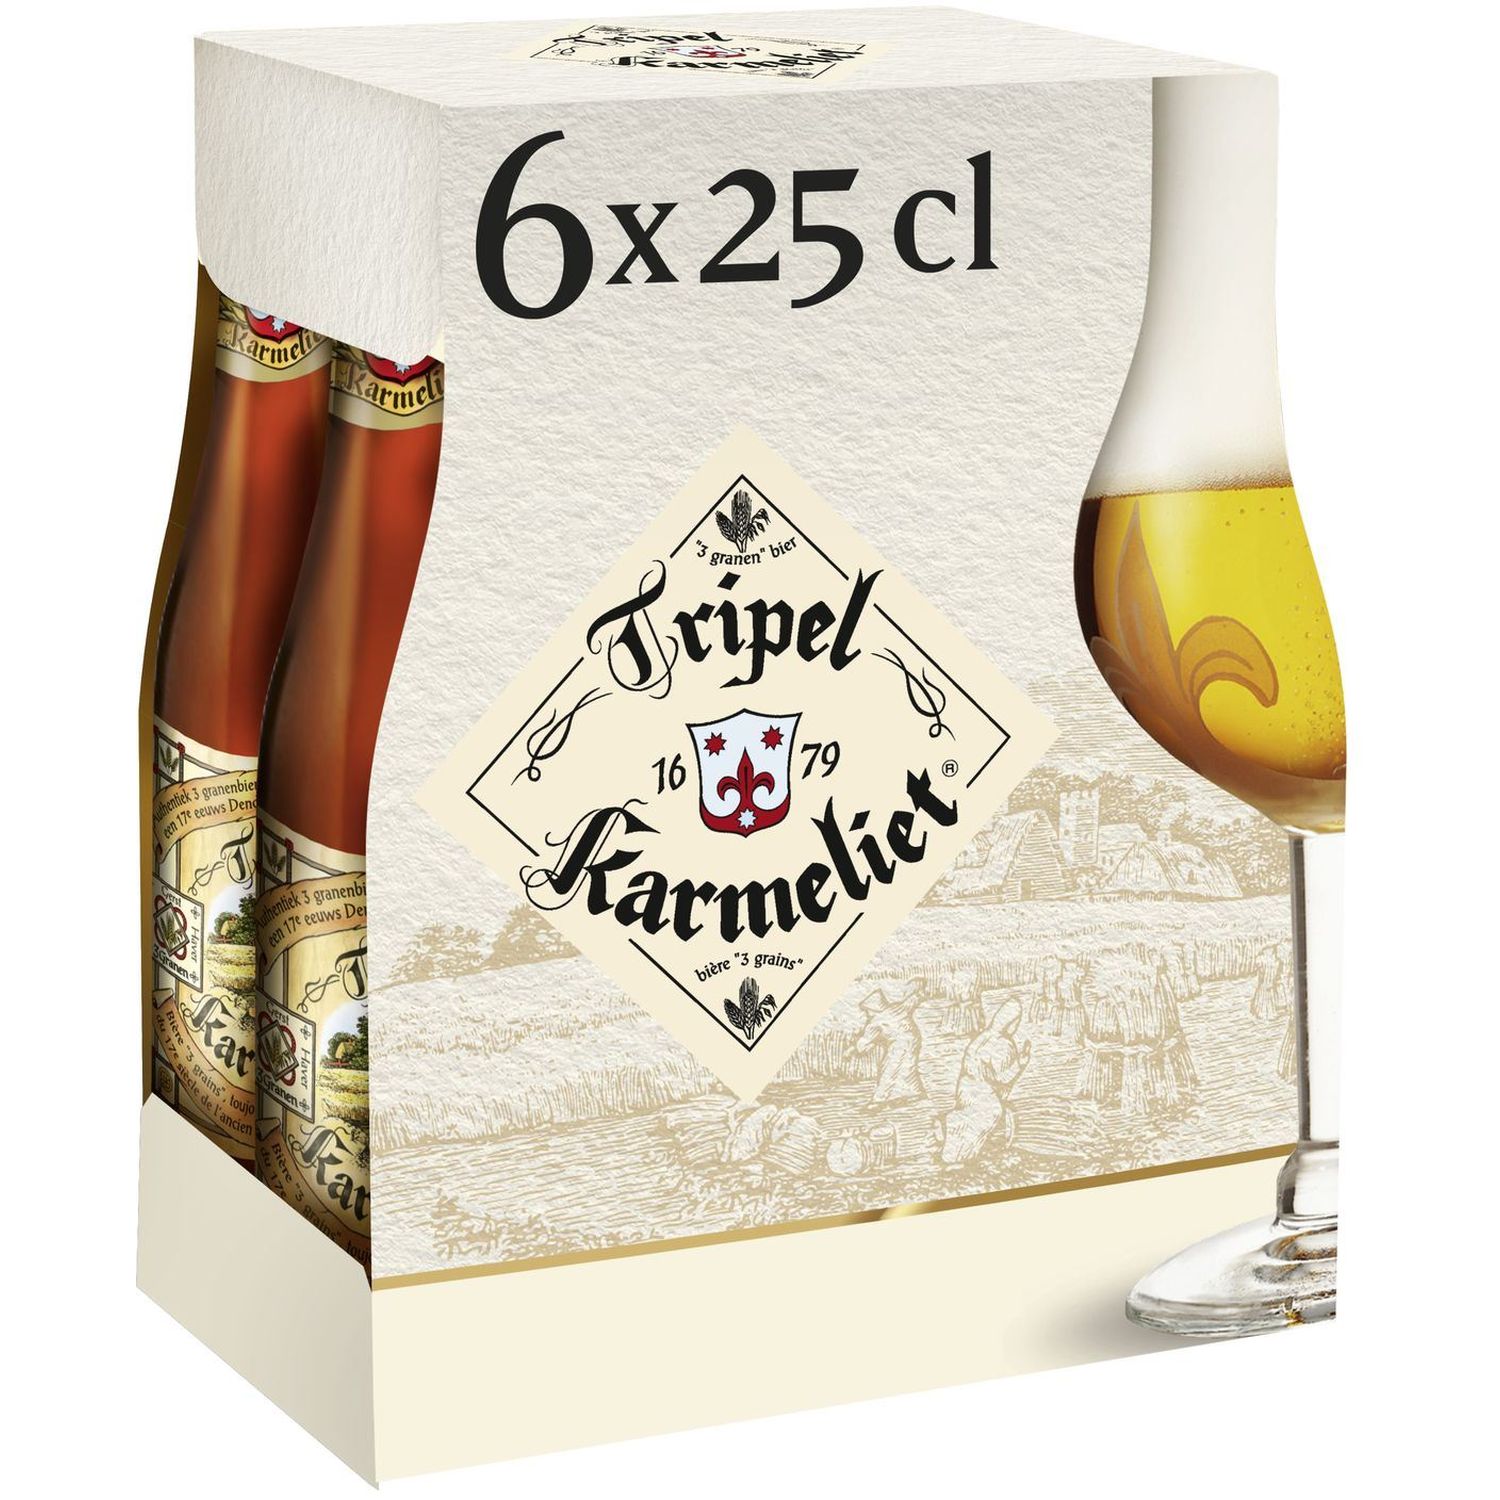 KARMELIET Bière blonde triple 8.4% bouteilles 6x25cl pas cher